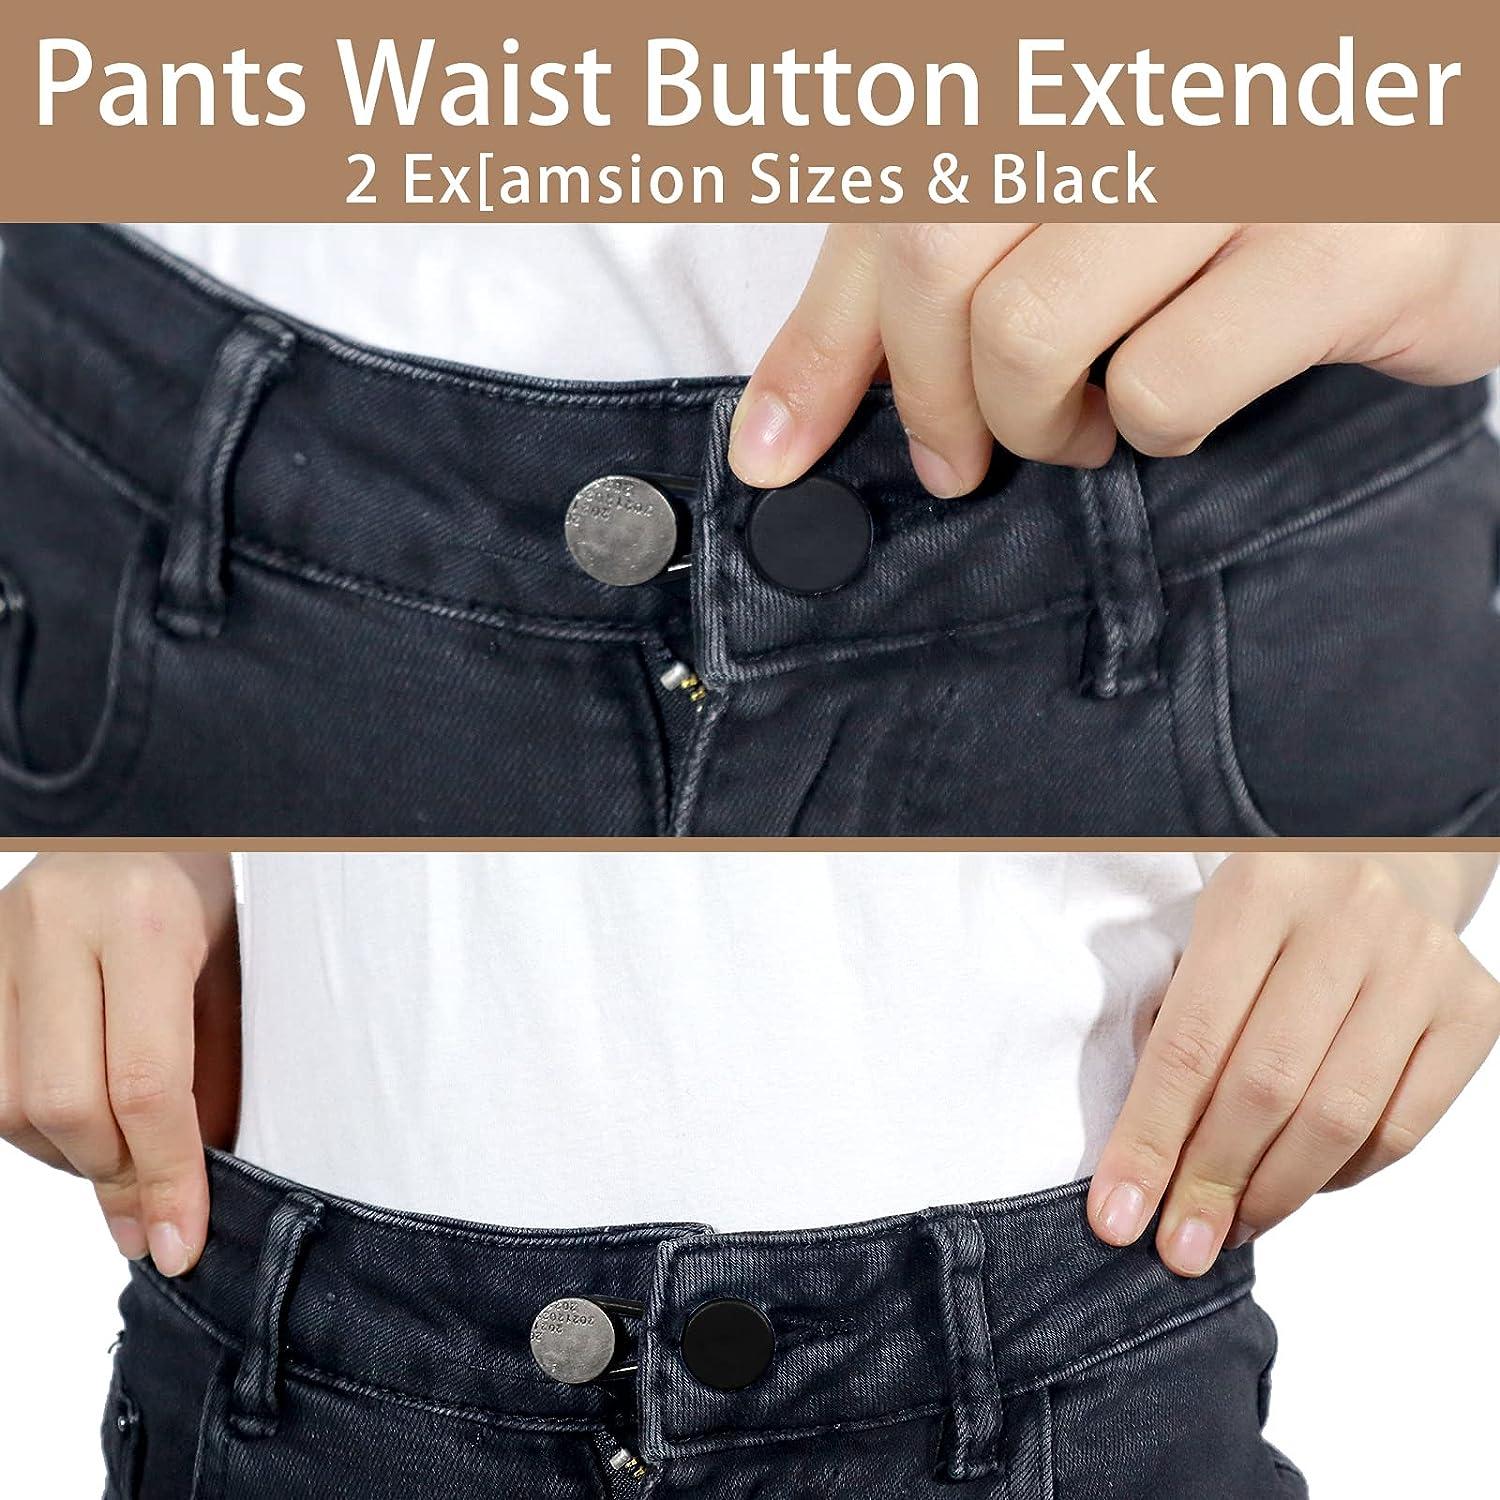 Pants Waist Button Extender: 12Pcs Button Extenders For Jeans - Women Men  Pants Waist Extenders - Pants Waist Extension 1/1.4 Inches - 3 Colors Pant  Waistband Expander